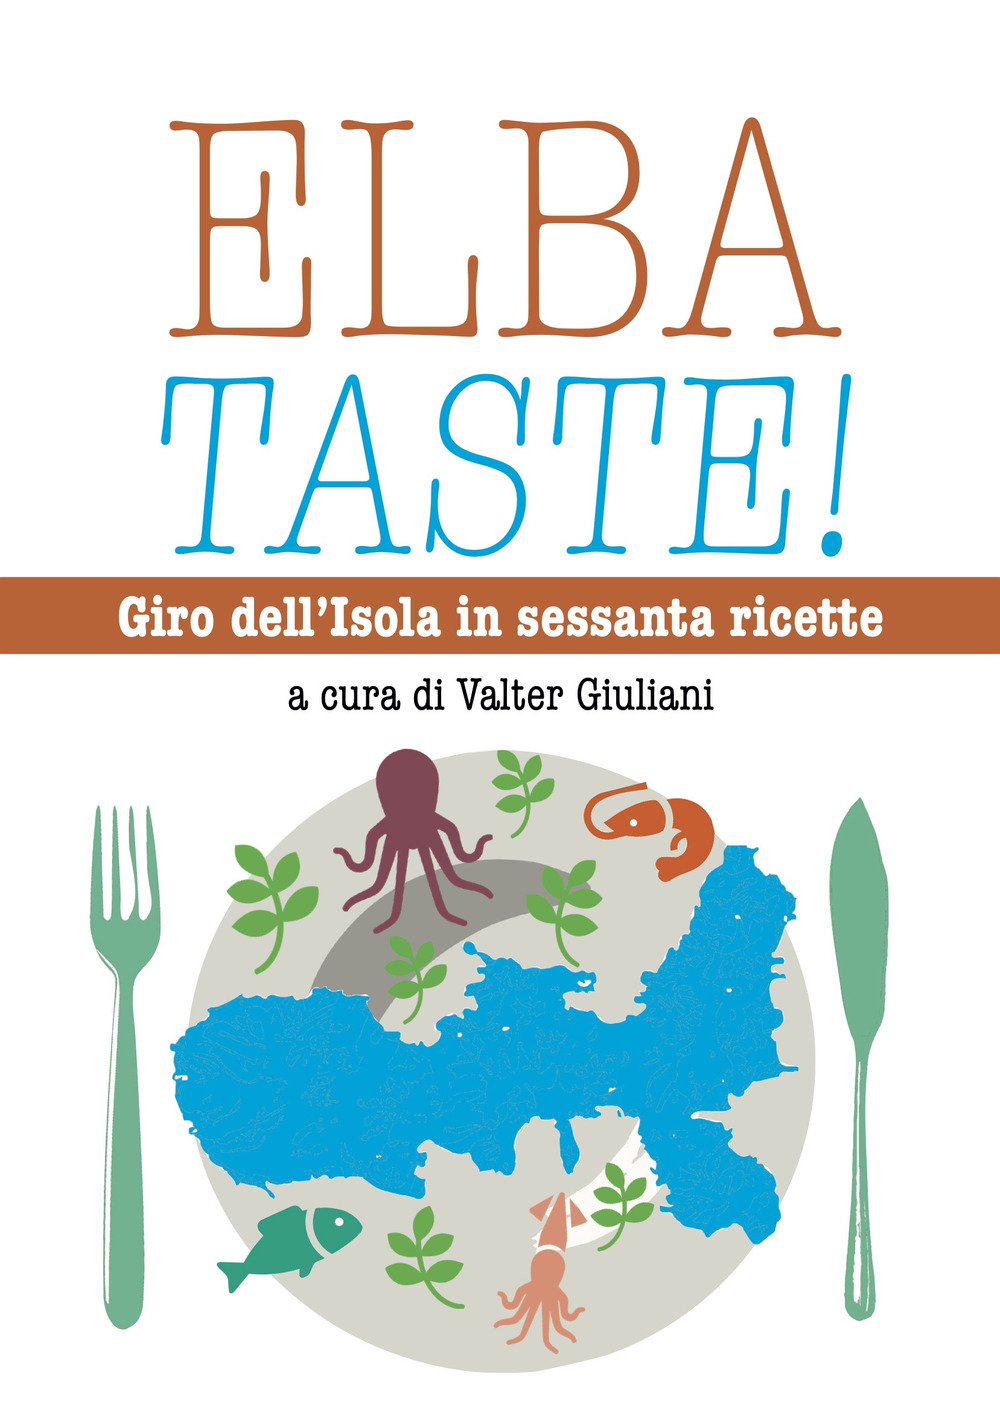 Elba taste! Giro dell'isola in sessanta ricette